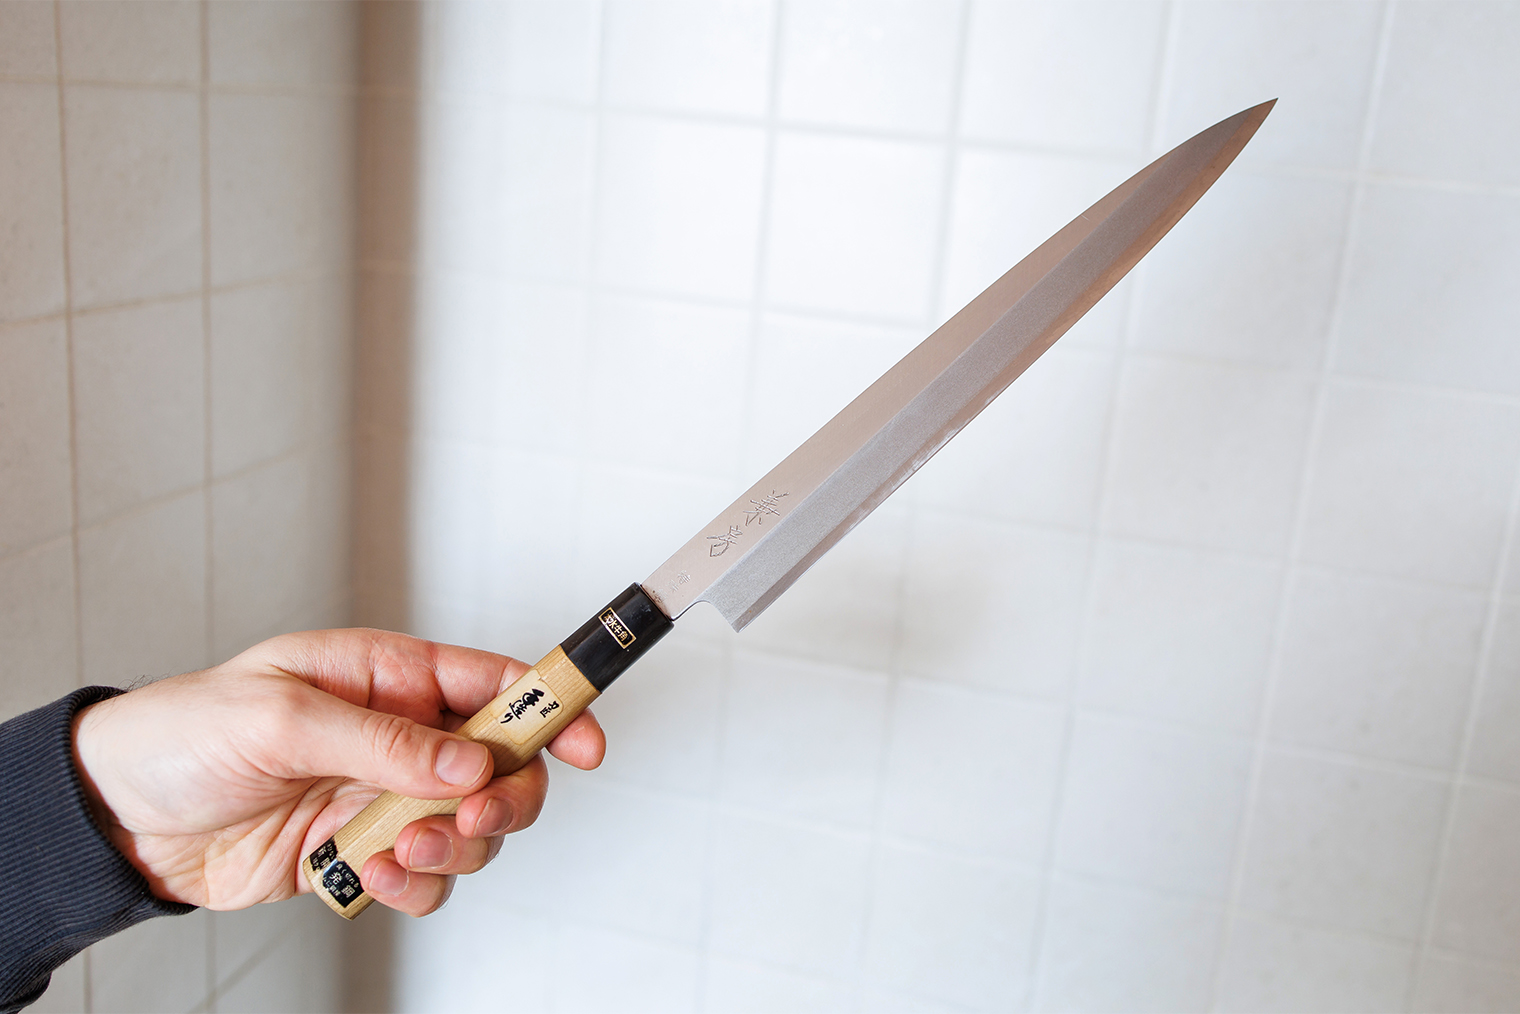 Любимый японский нож шефа: им удобно разделывать мясо или резать к завтраку лосось